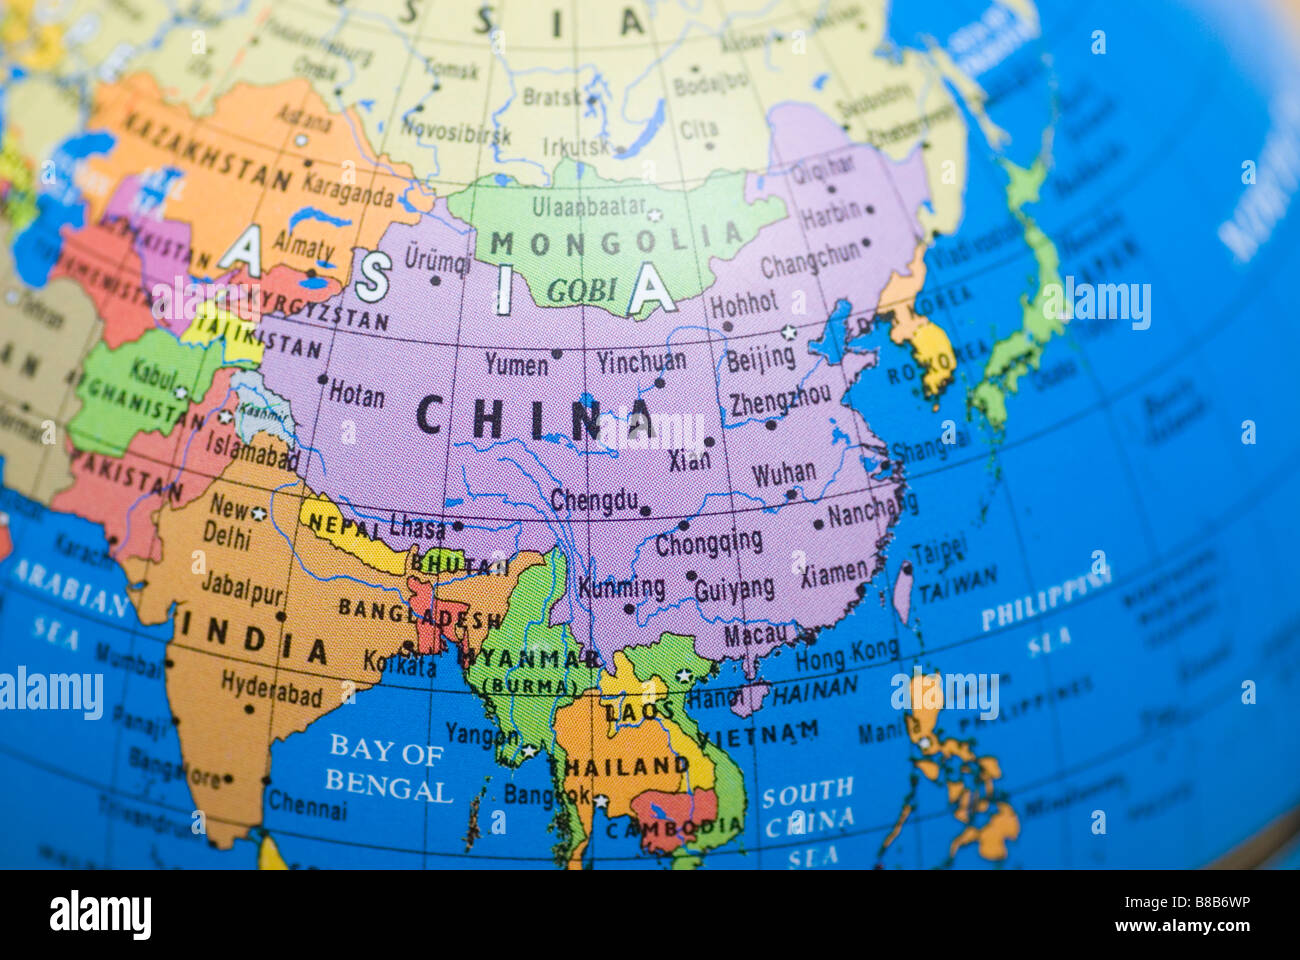 Map of China on a world globe Stock Photo